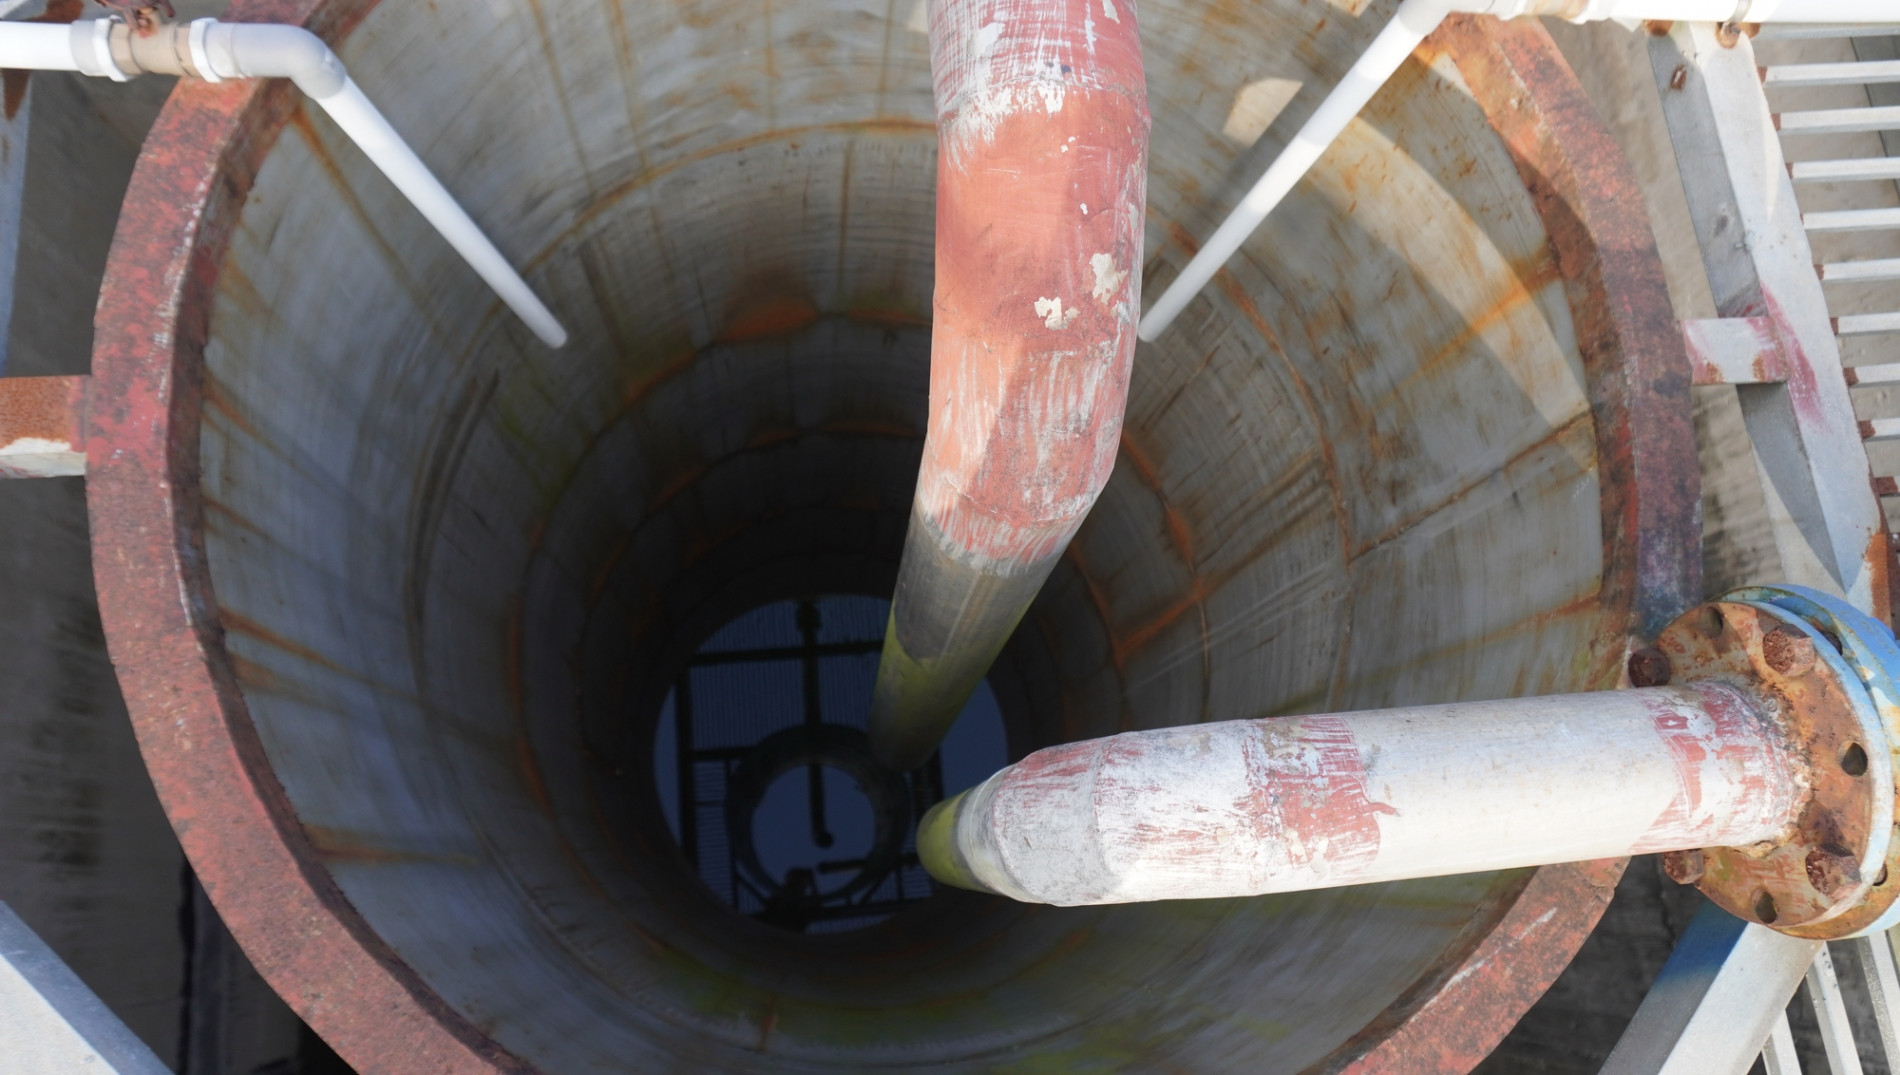 Trạm xử lý nước thải ở khu công nghiệp 147 tỉ đồng bỏ hoang gần 20 năm - Ảnh 12.